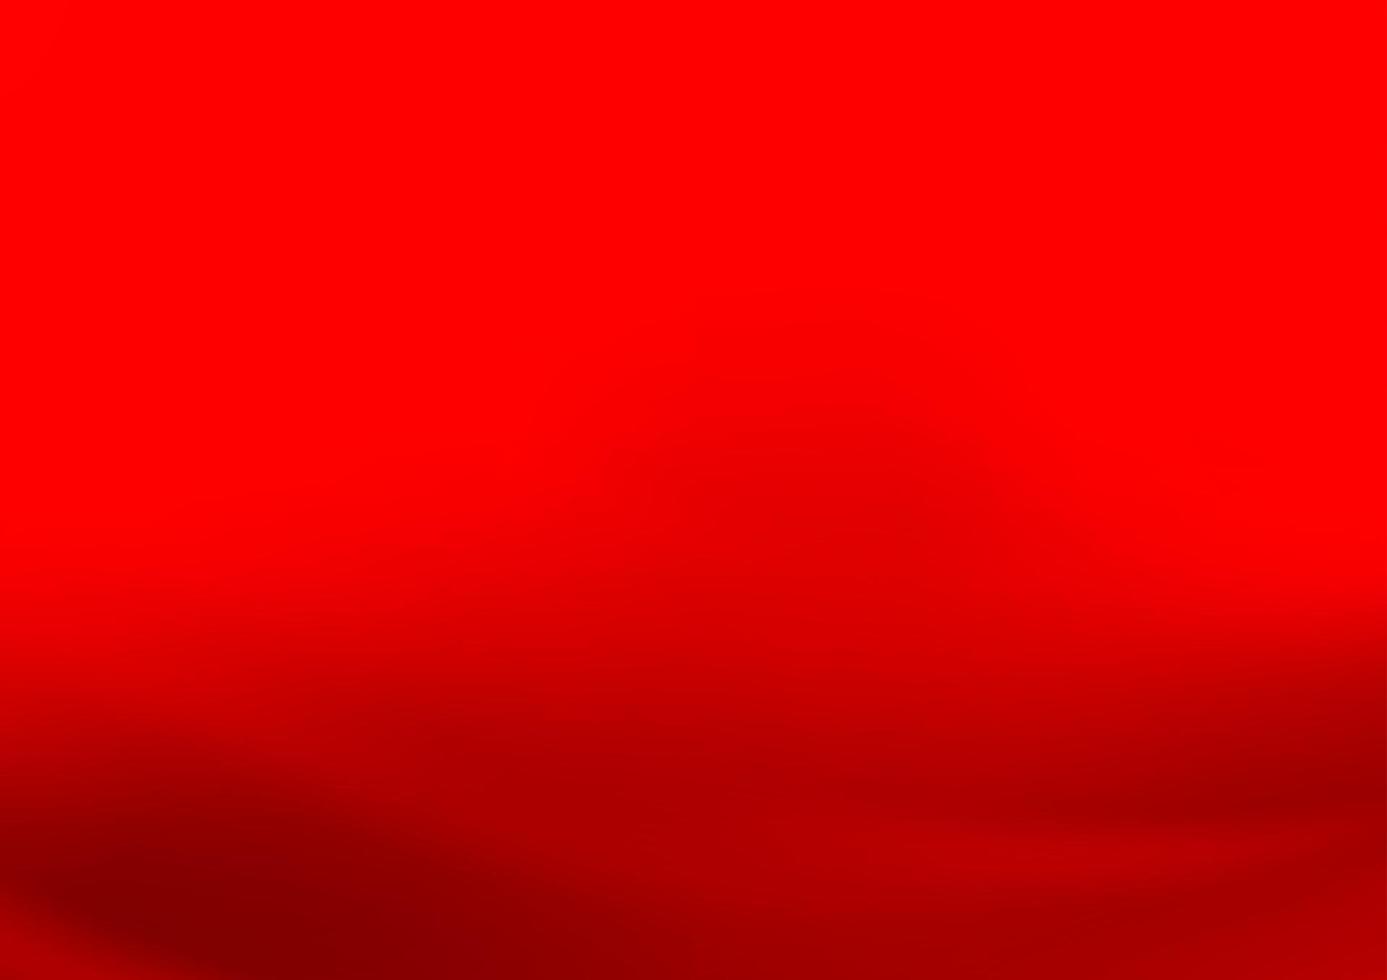 modelo elegante moderno de vetor vermelho claro.